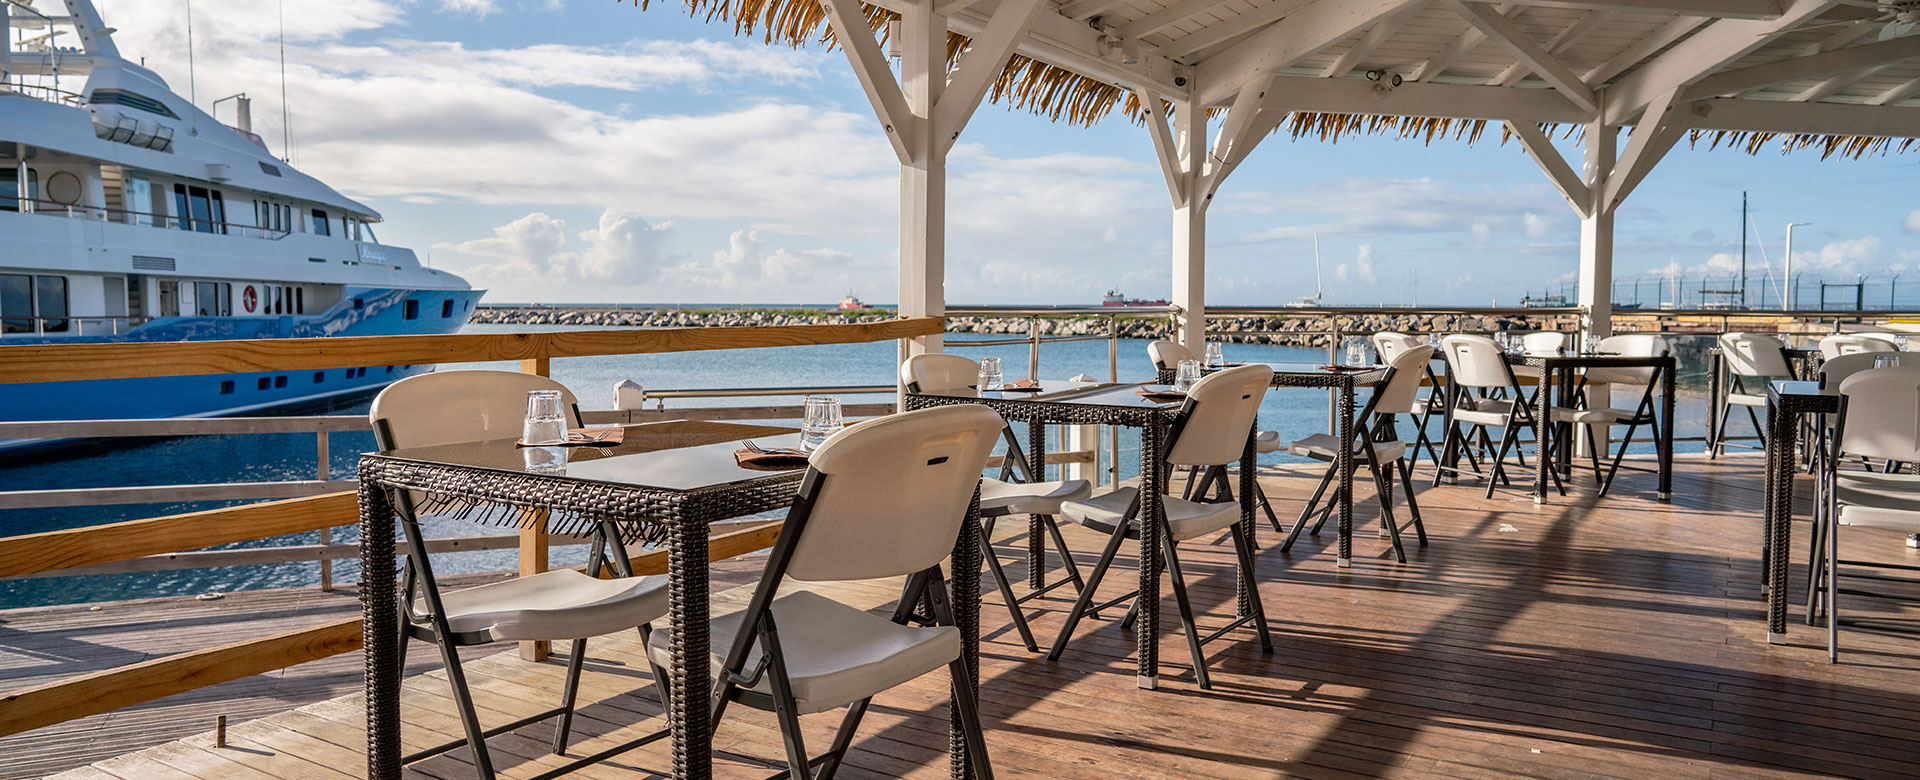 Yacht Club Restaurant Pizza - Terrasse Vue Mer